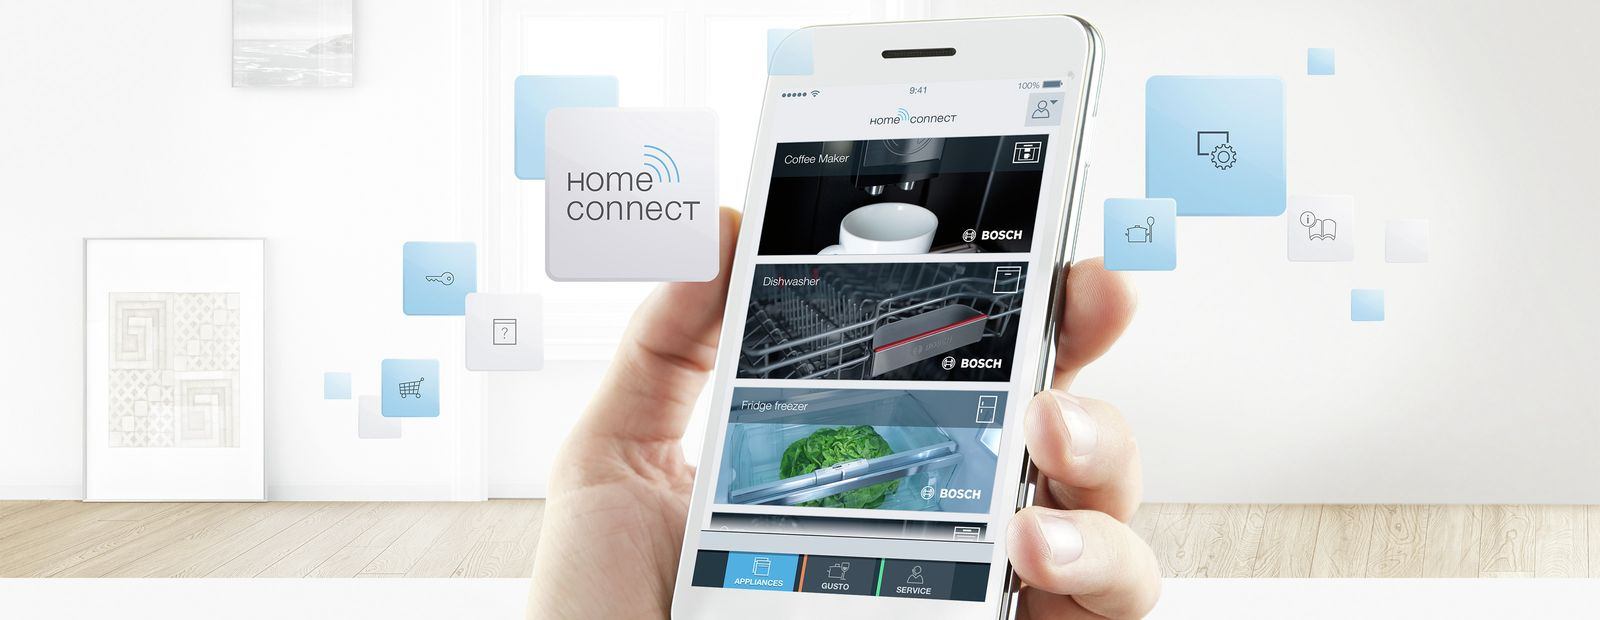 Kết nối thông minh Home Connect: Kiểm soát và điều khiển tủ từ xa tiện lợi